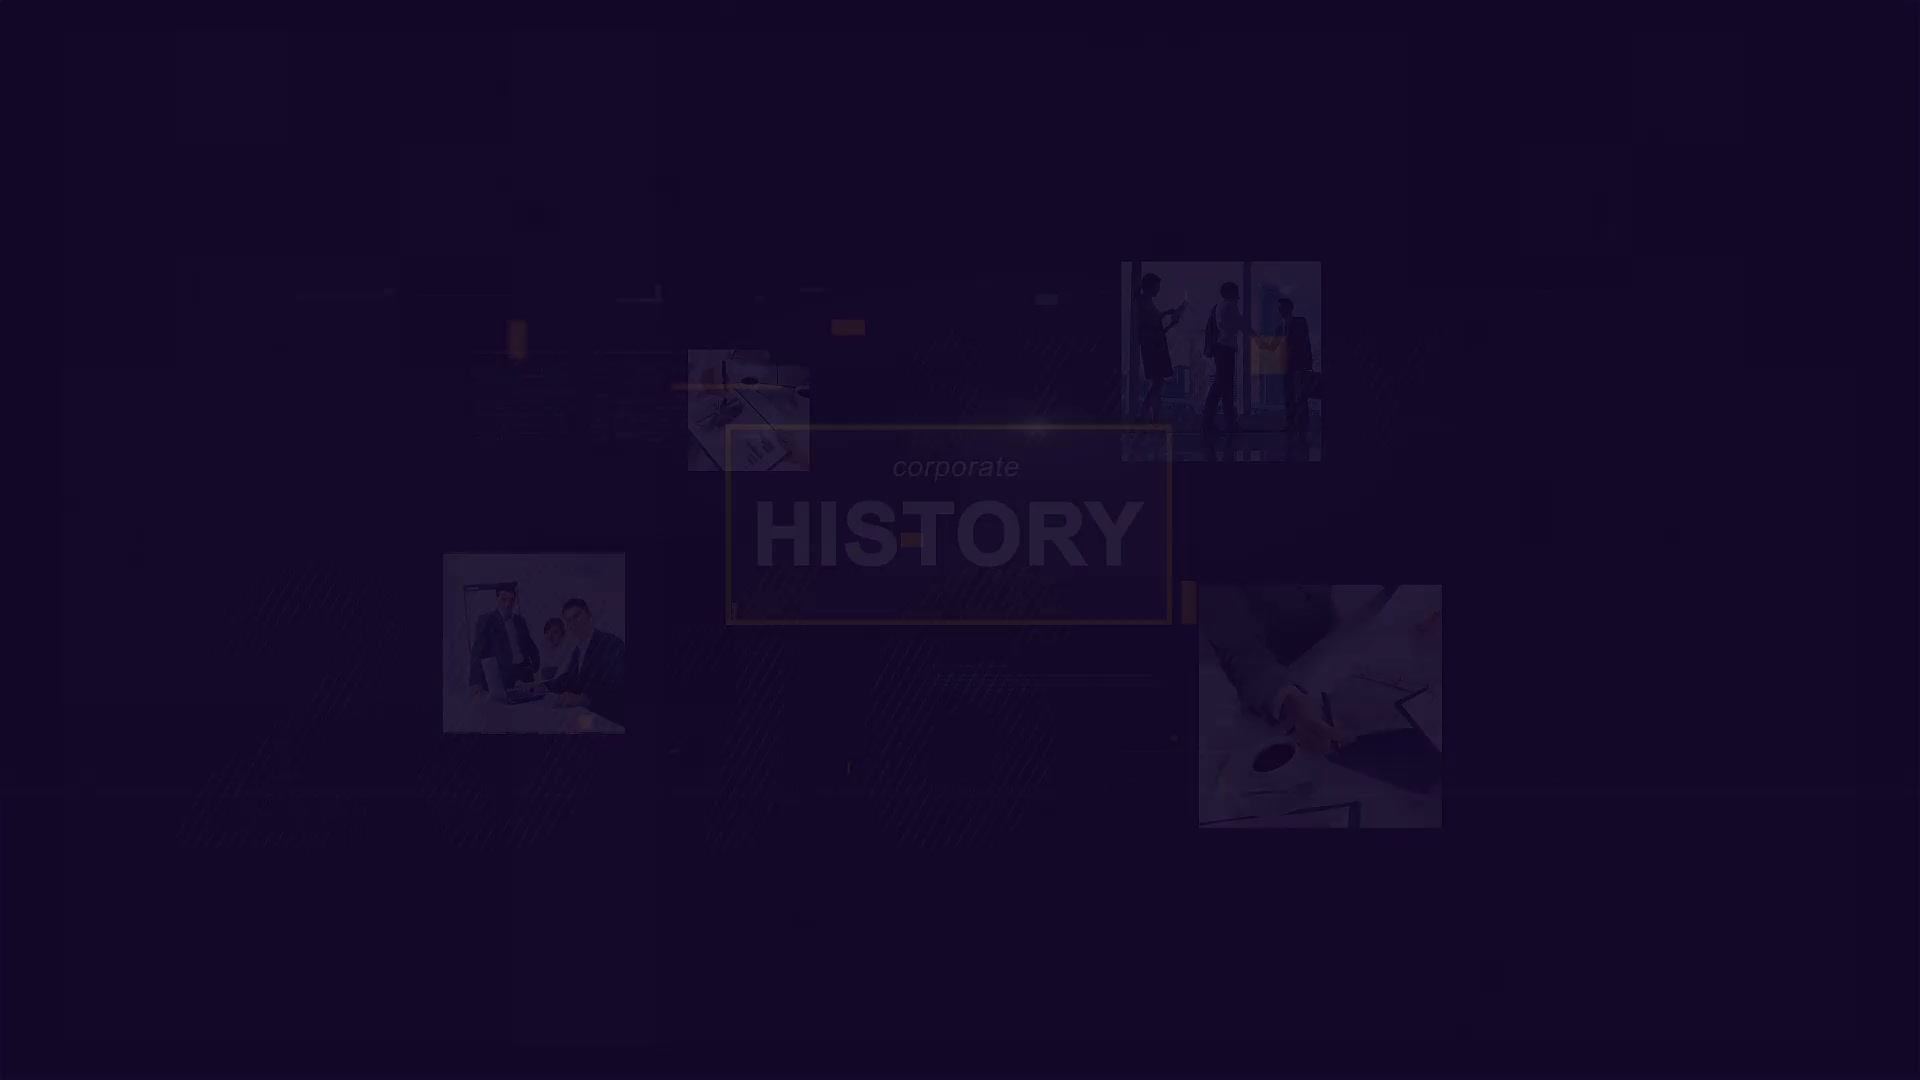 Corporate History Videohive 28040478 Premiere Pro Image 3